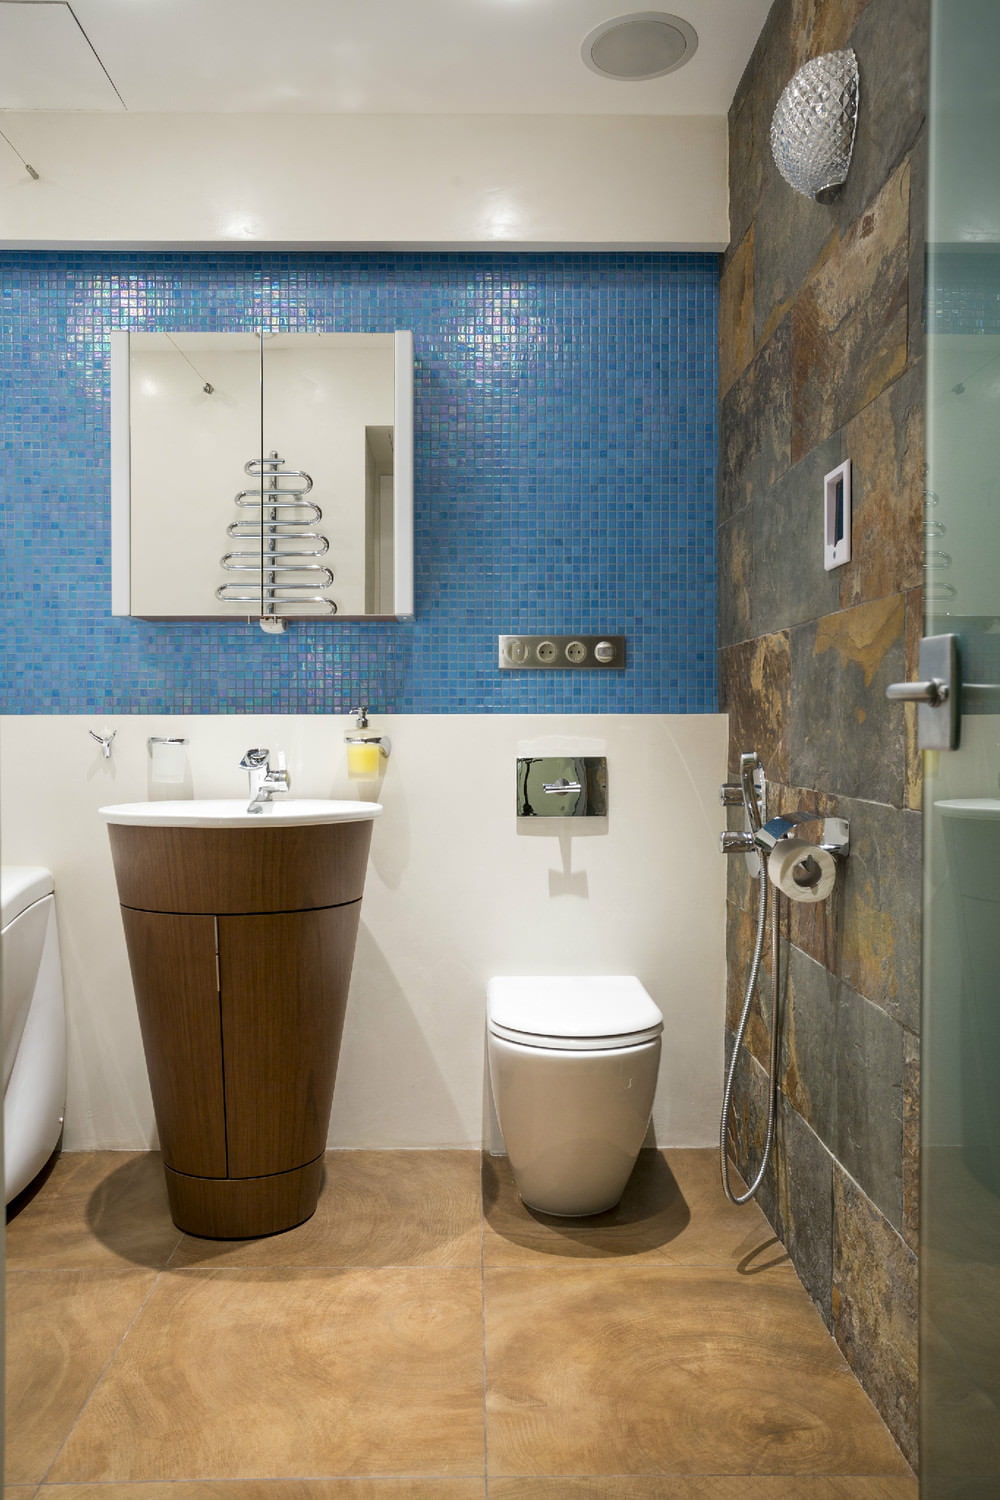 Salle de bain dans la conception d'un appartement de deux pièces de 43 mètres carrés. m